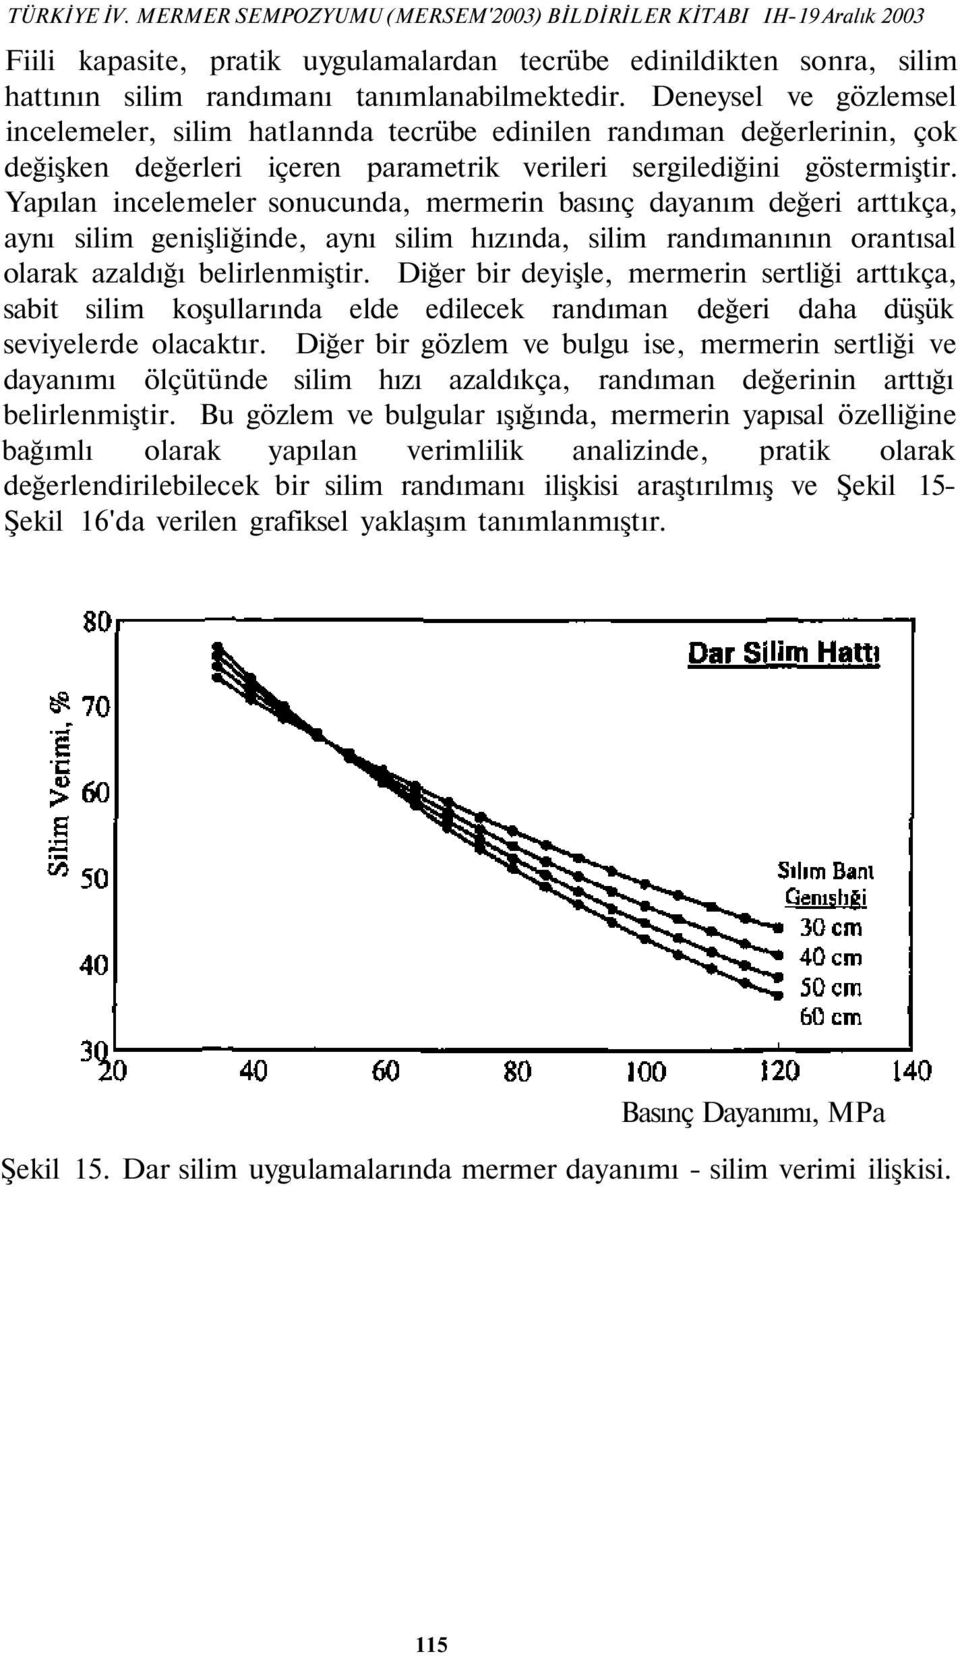 Yapılan incelemeler sonucunda, mermerin basınç dayanım değeri arttıkça, aynı silim genişliğinde, aynı silim hızında, silim randımanının orantısal olarak azaldığı belirlenmiştir.